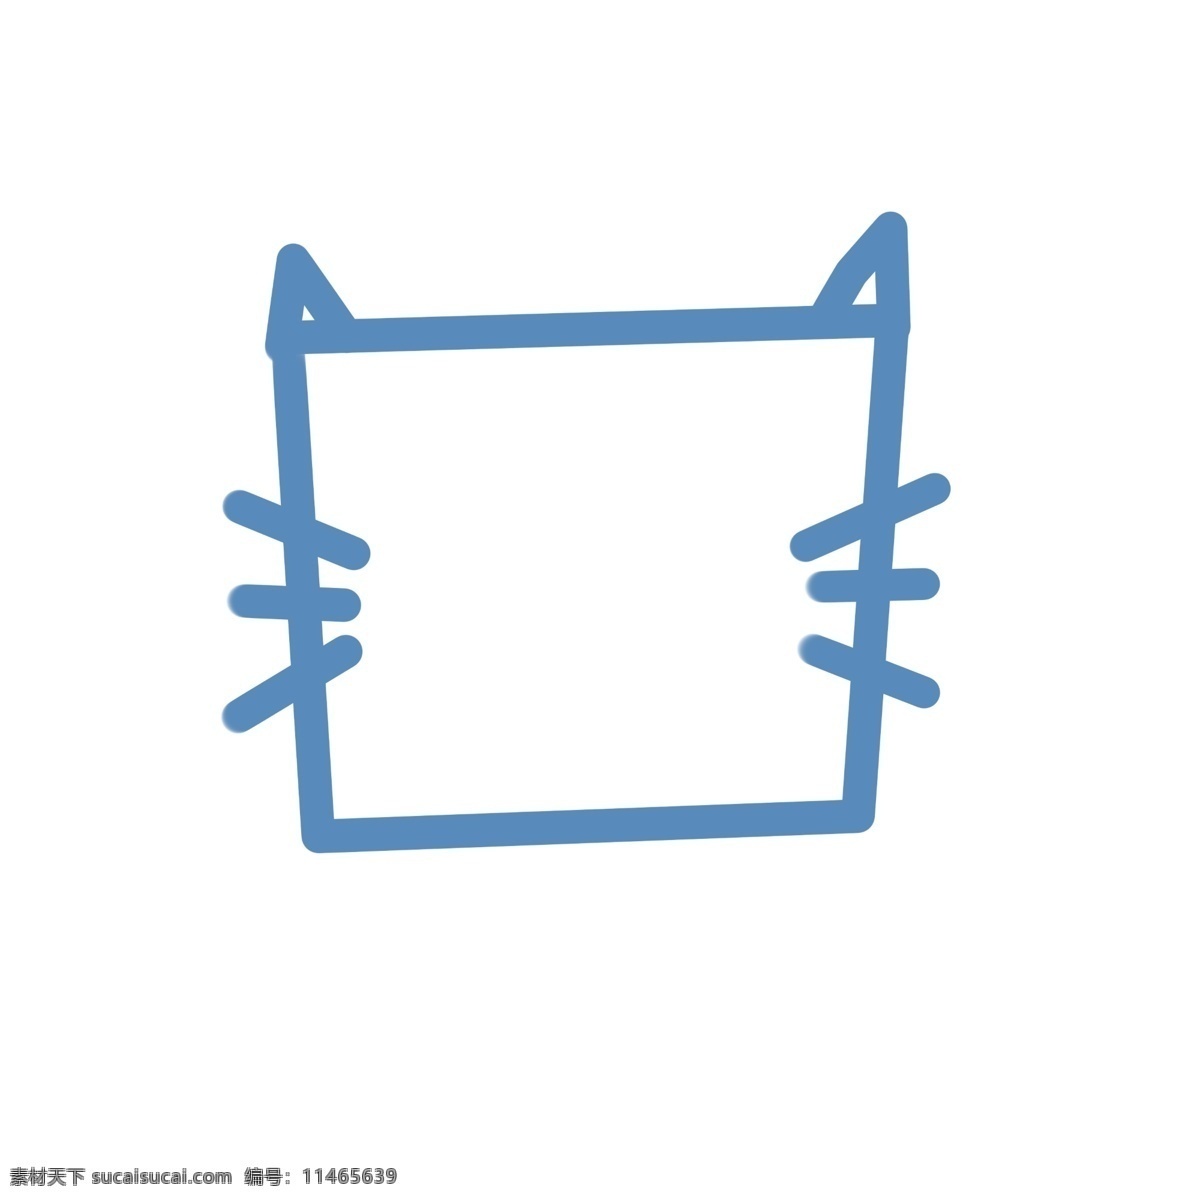 简单 对话框 蓝色 猫咪 可爱 对话款 手绘 简约 框 卡通 猫猫 猫型对话框 方形 卡通手绘